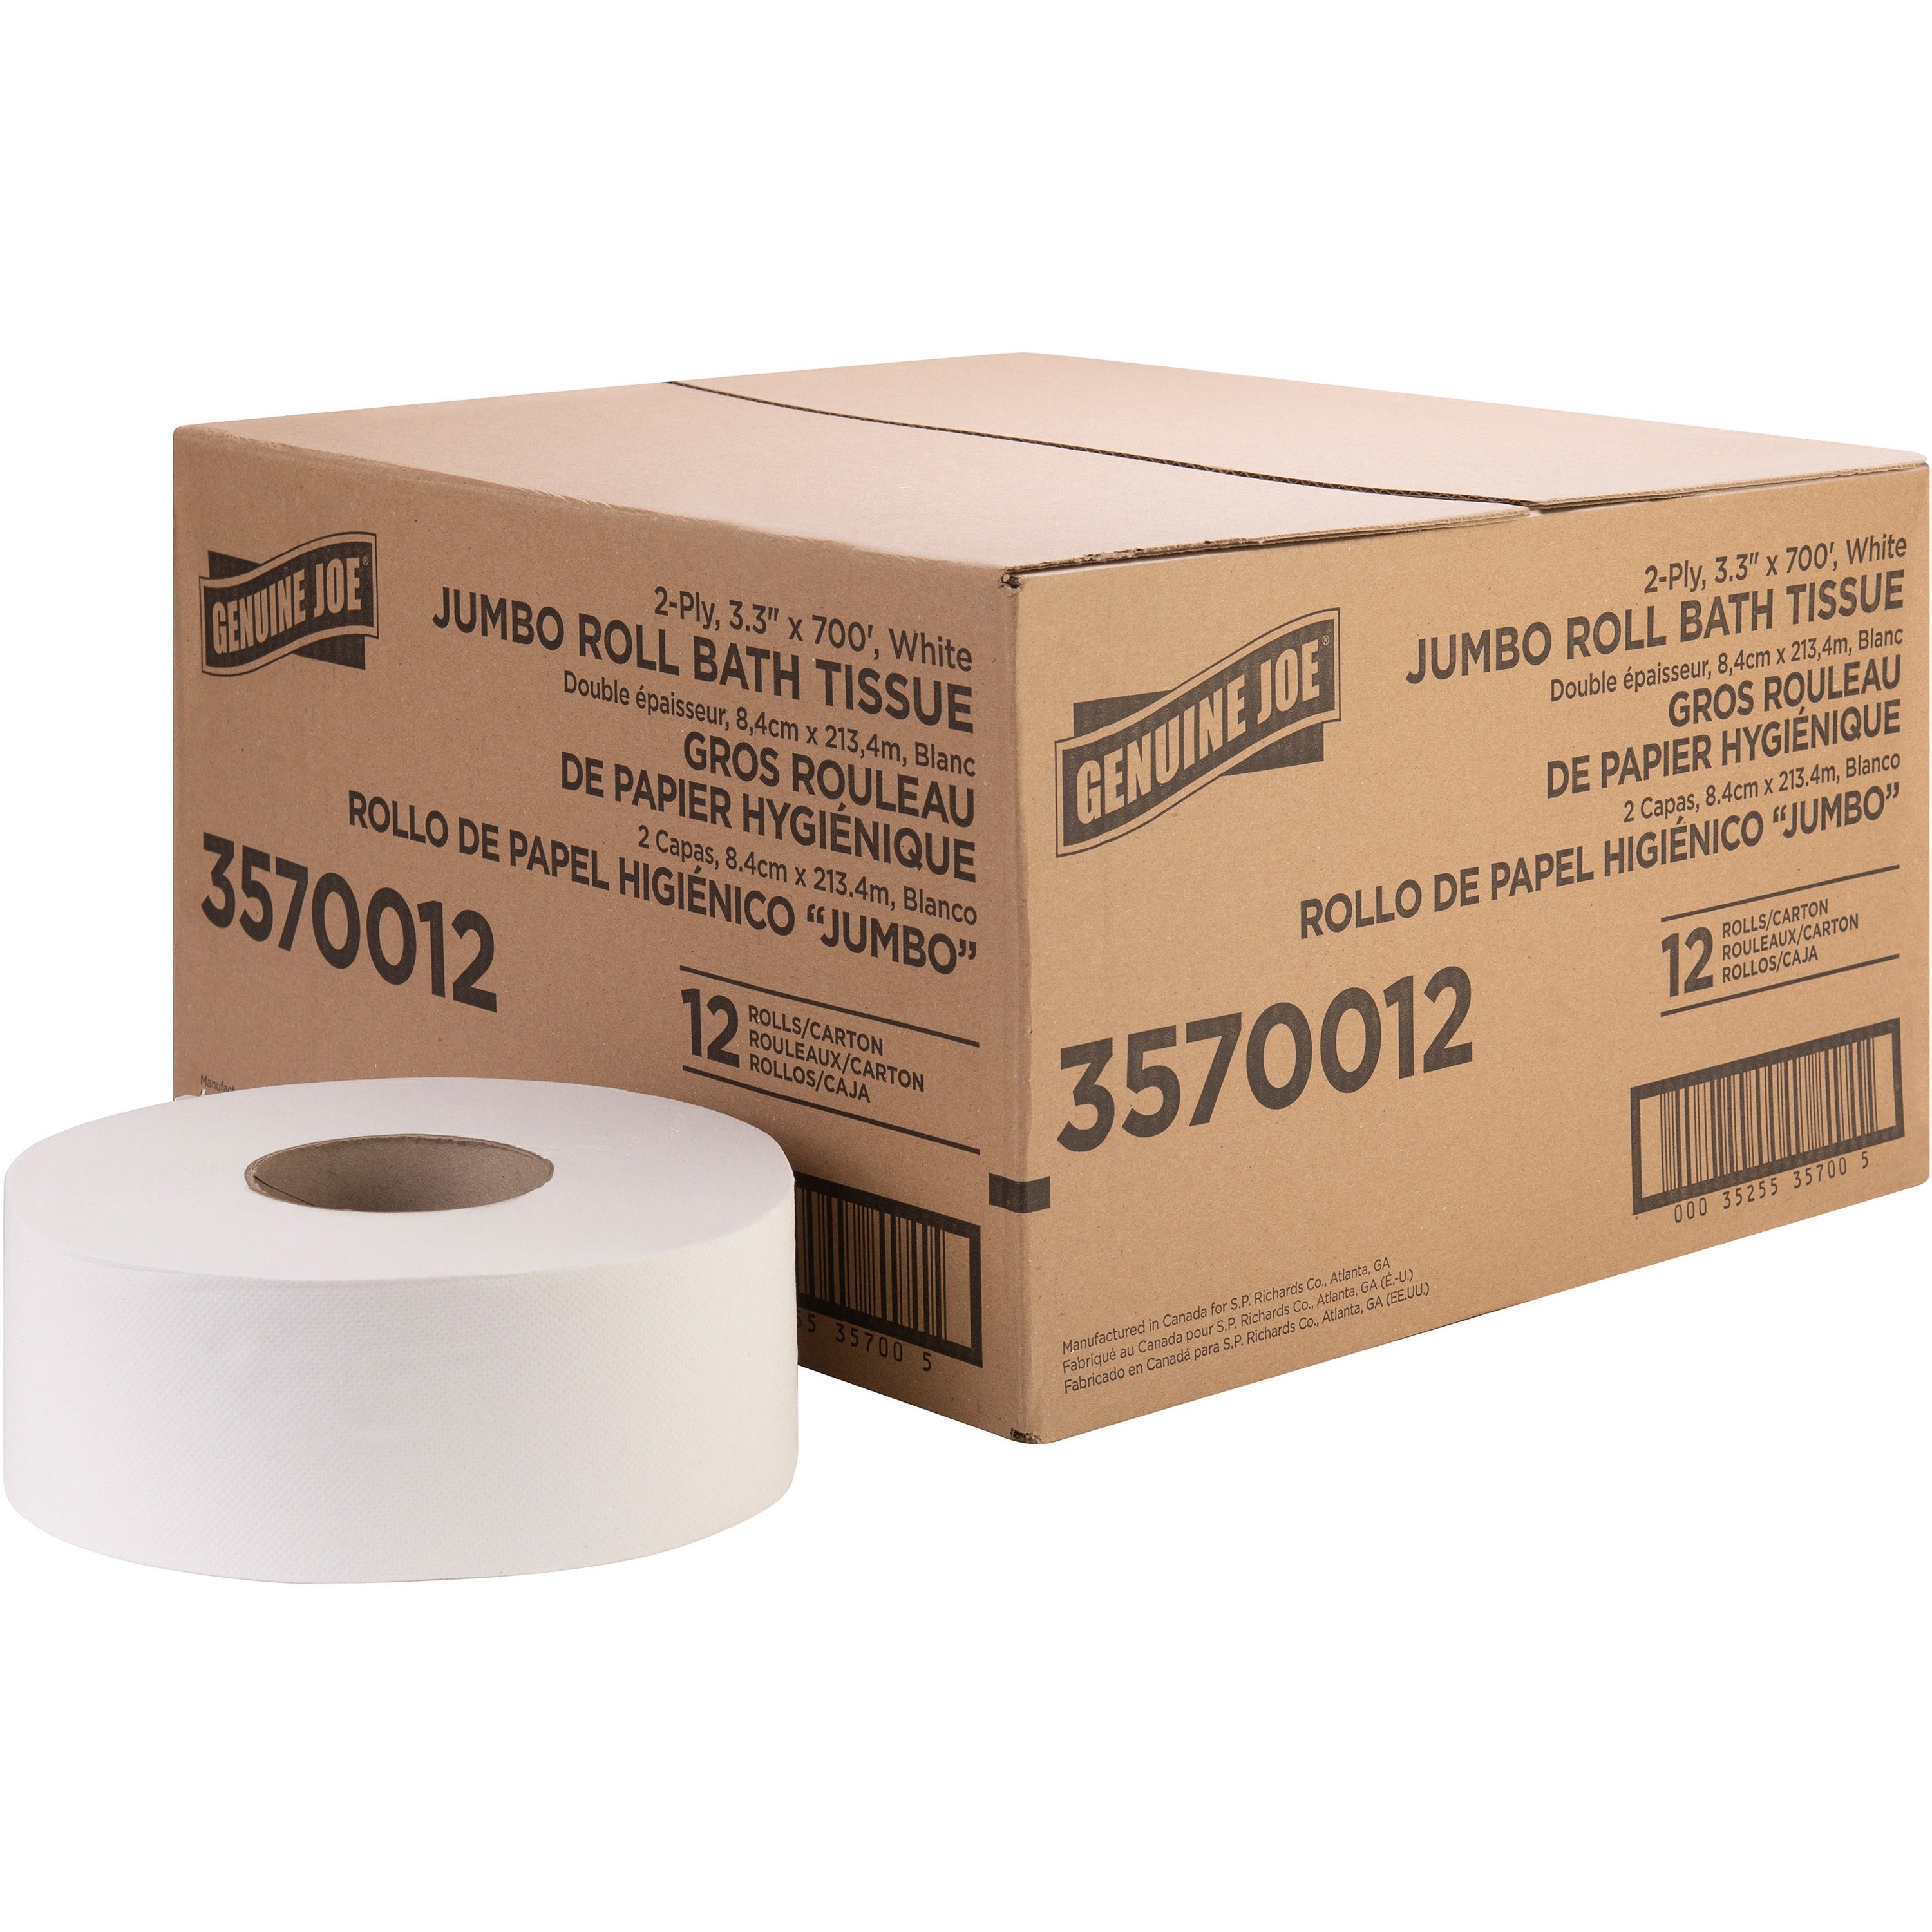 genuine-joe-jumbo-jr-dispenser-bath-tissue-roll-2-ply-330-x-700-ft-888-roll-diameter-white-fiber-sewer-safe-septic-safe-for-bathroom-12-carton_gjo3570012 - 1